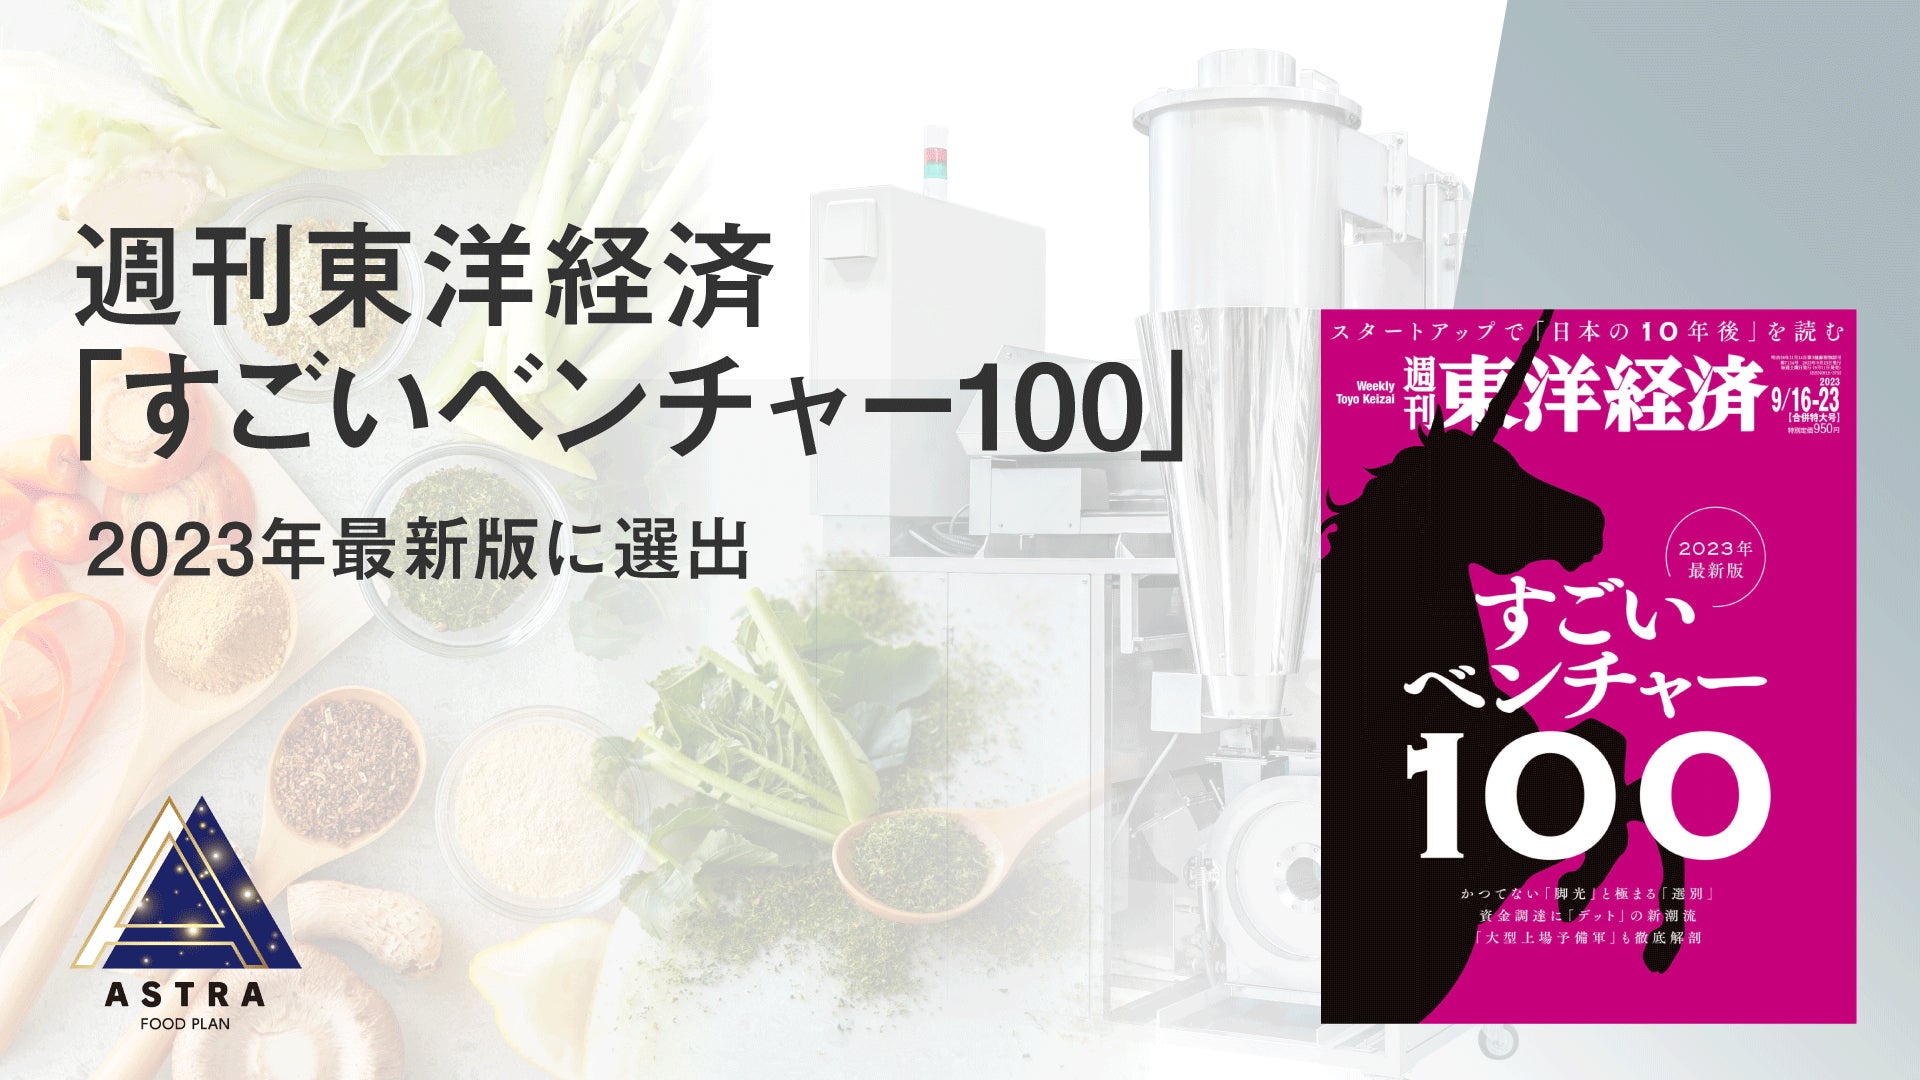 かくれフードロスに向き合うASTRA FOOD PLAN、週刊東洋経済「すごいベンチャー100」2023年最新版 厳選7社に選出